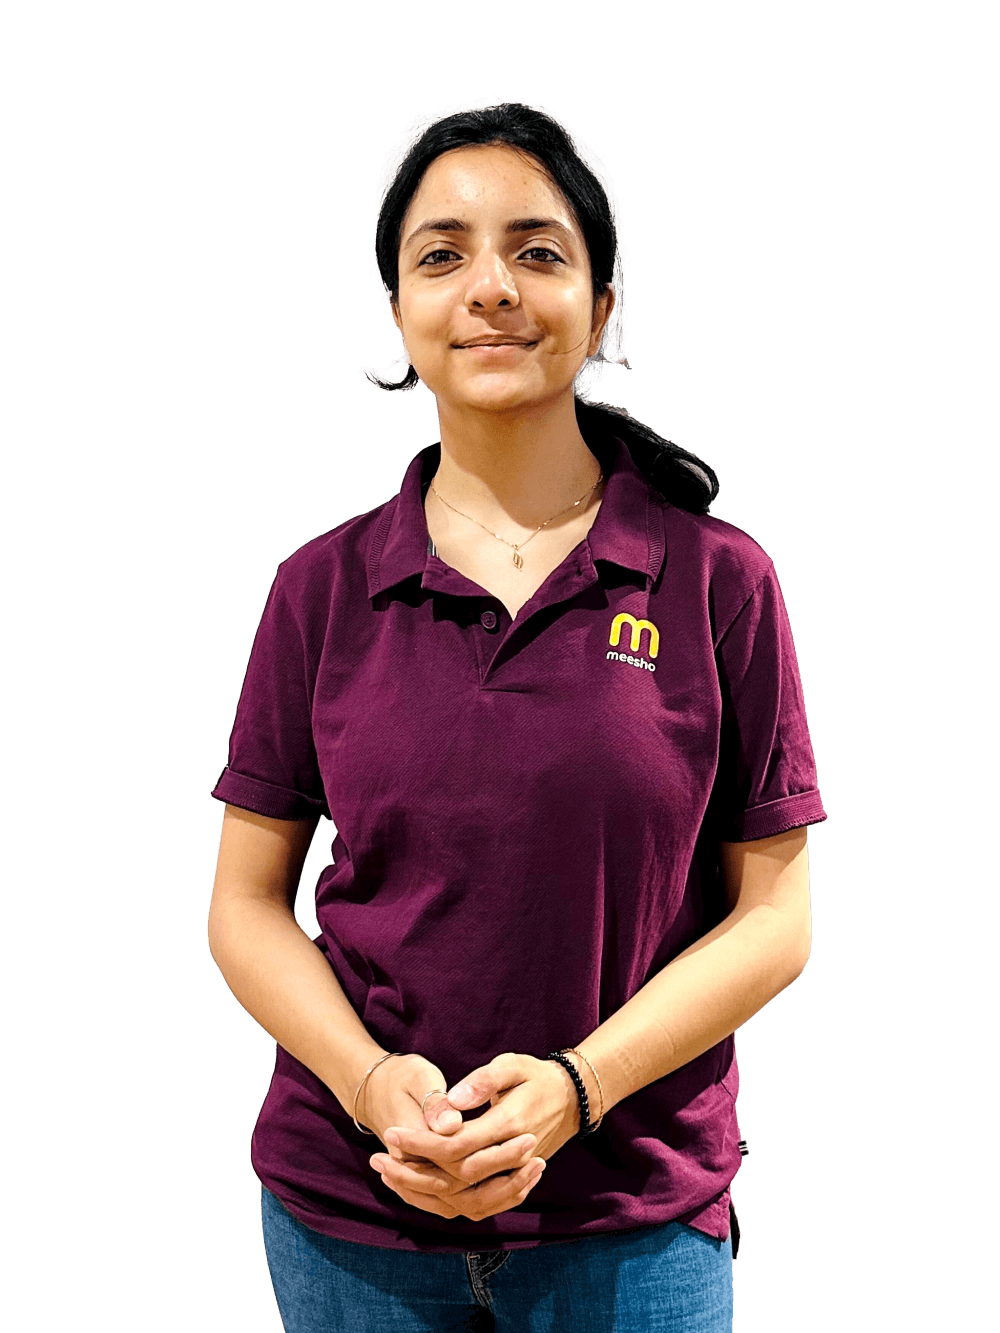 Profile - Ashmita Bhattacharya